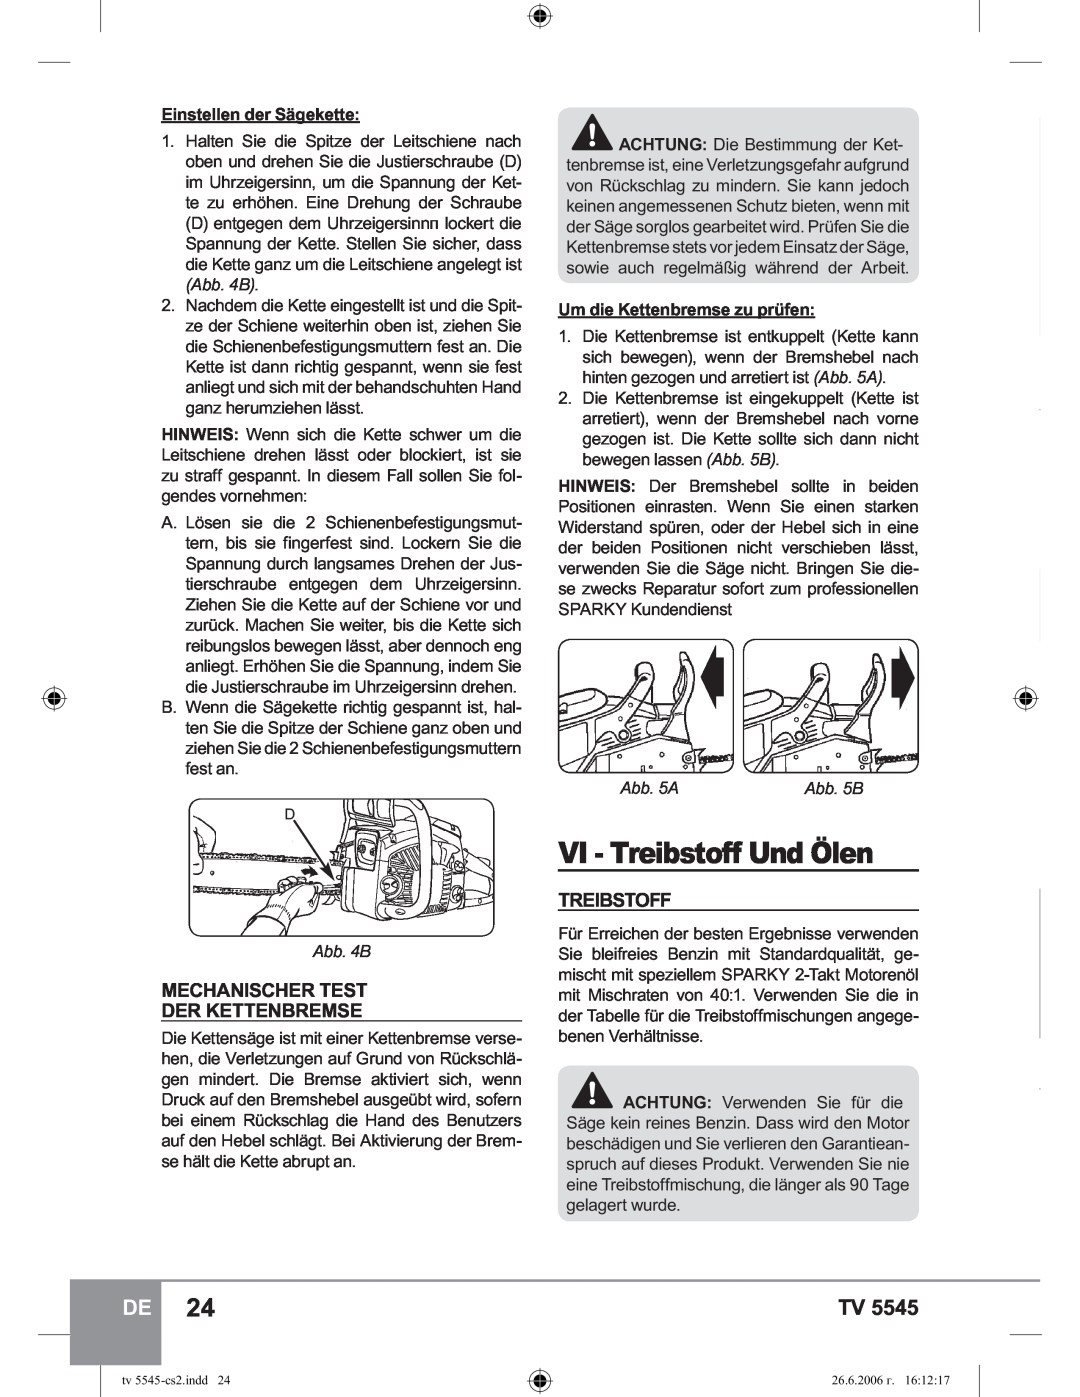 Sparky Group TV 5545 manual VI - Treibstoff Und Ölen, Mechanischer Test Der Kettenbremse, Abb. 5A, Abb. 4B, Abb. 5B 